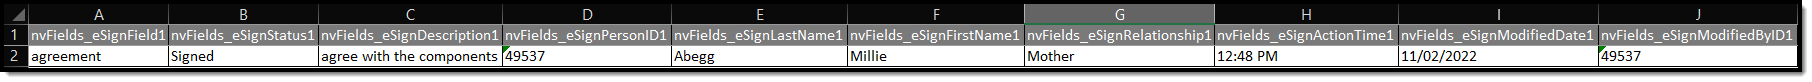 Screenshot of the Ad hoc eSignature Excel format example.